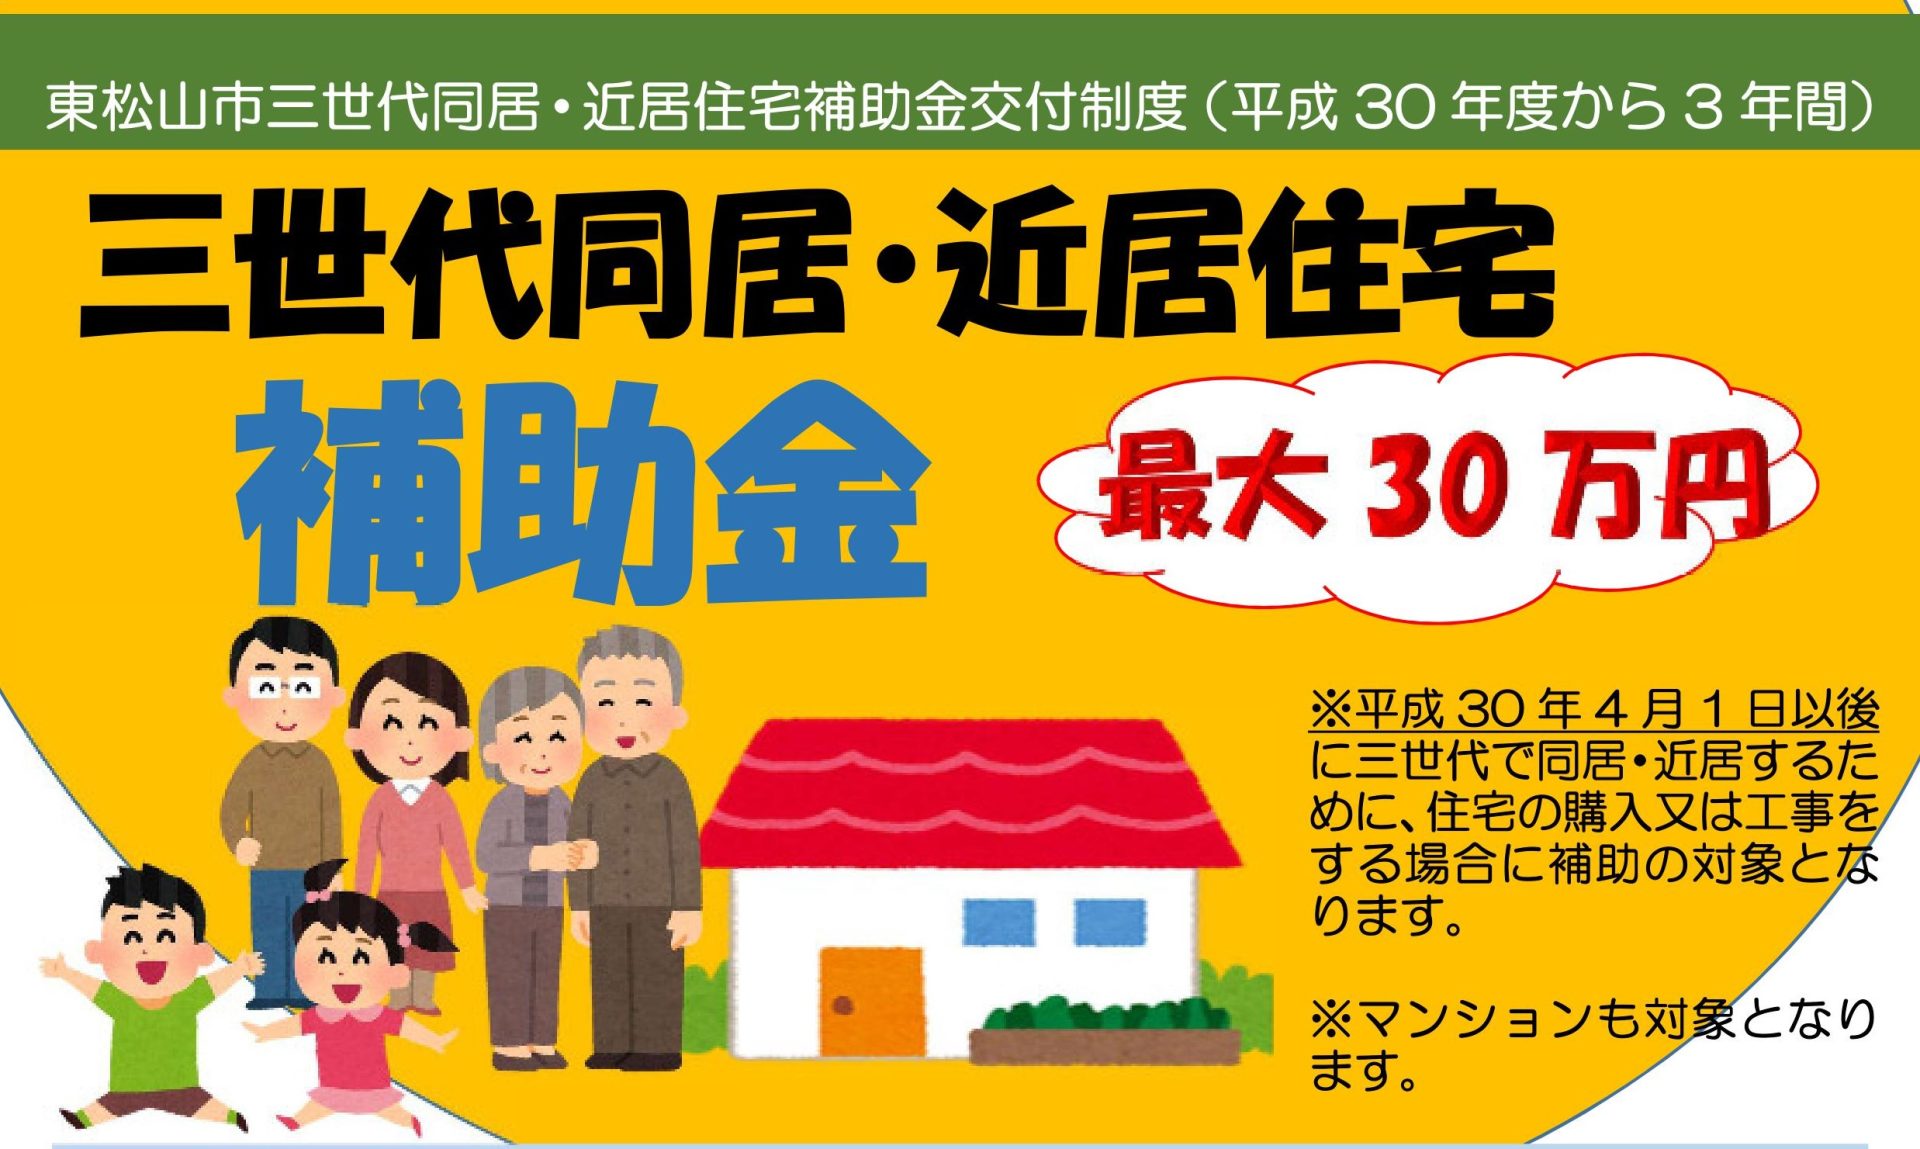 東松山市三世代同居・近居住宅補助金 | 地域のトピックス